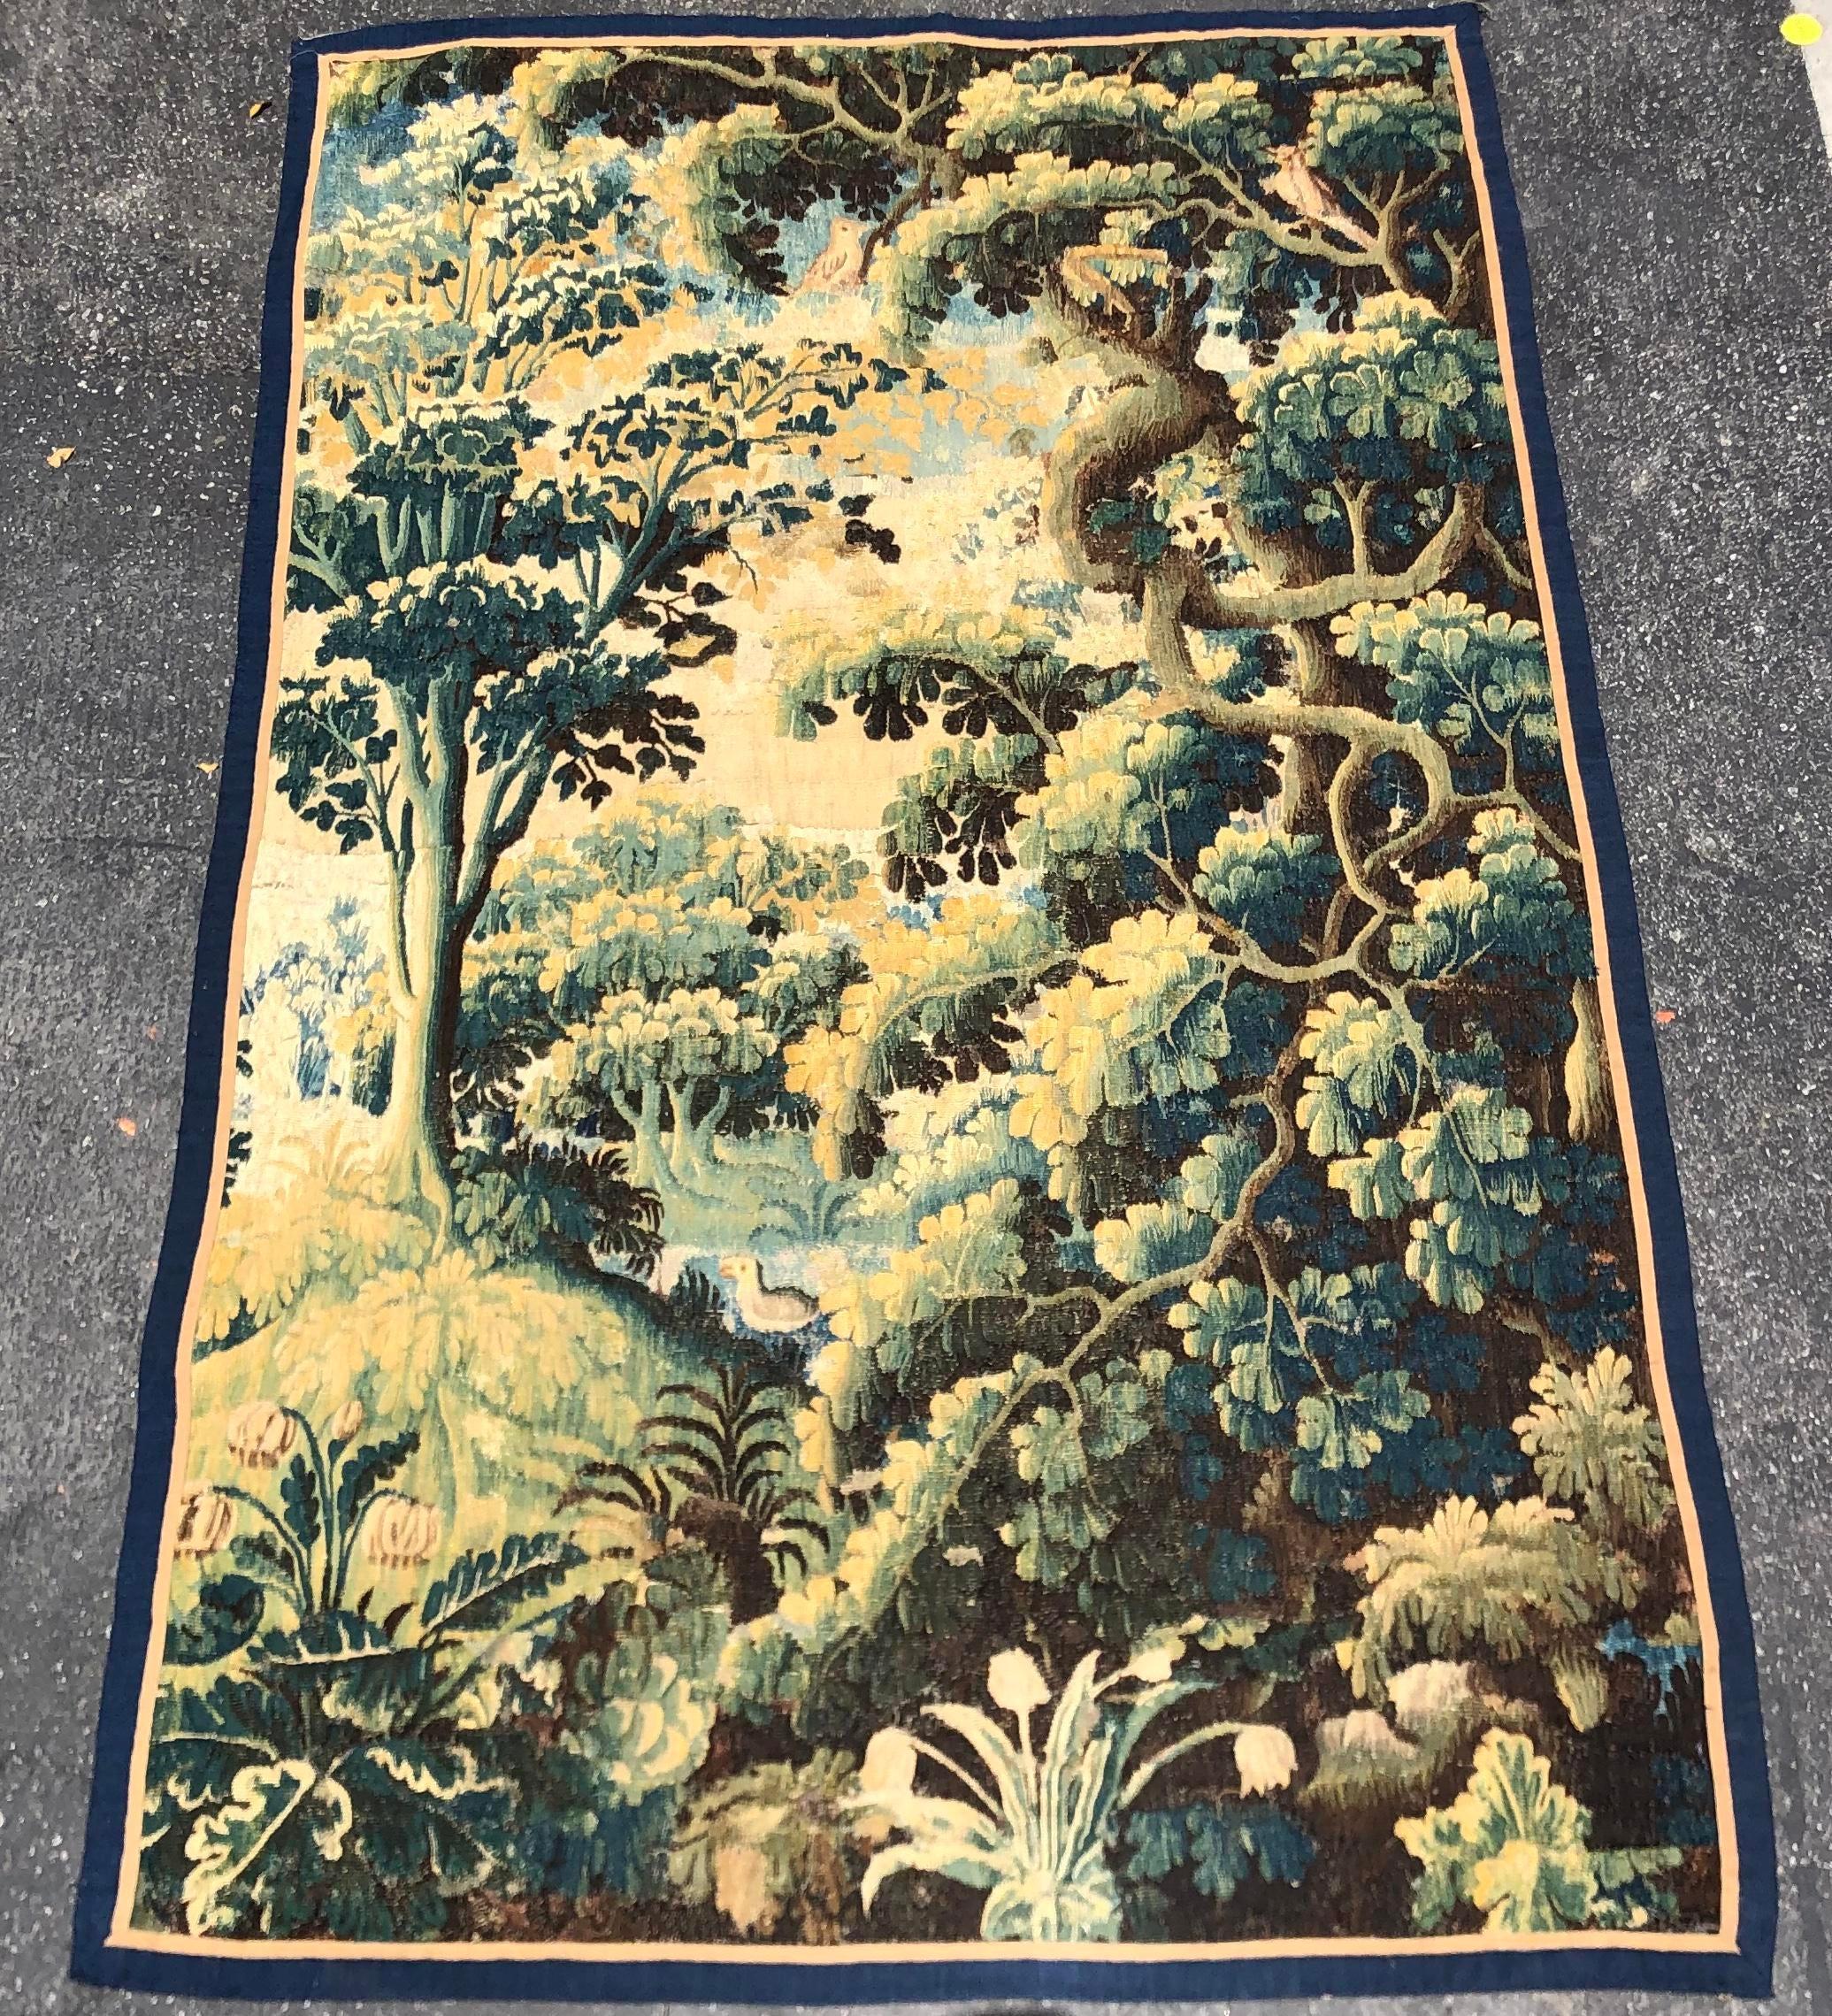 Hand-Woven Antique 17th Century Flemish Renaissance Landscape Tapestry